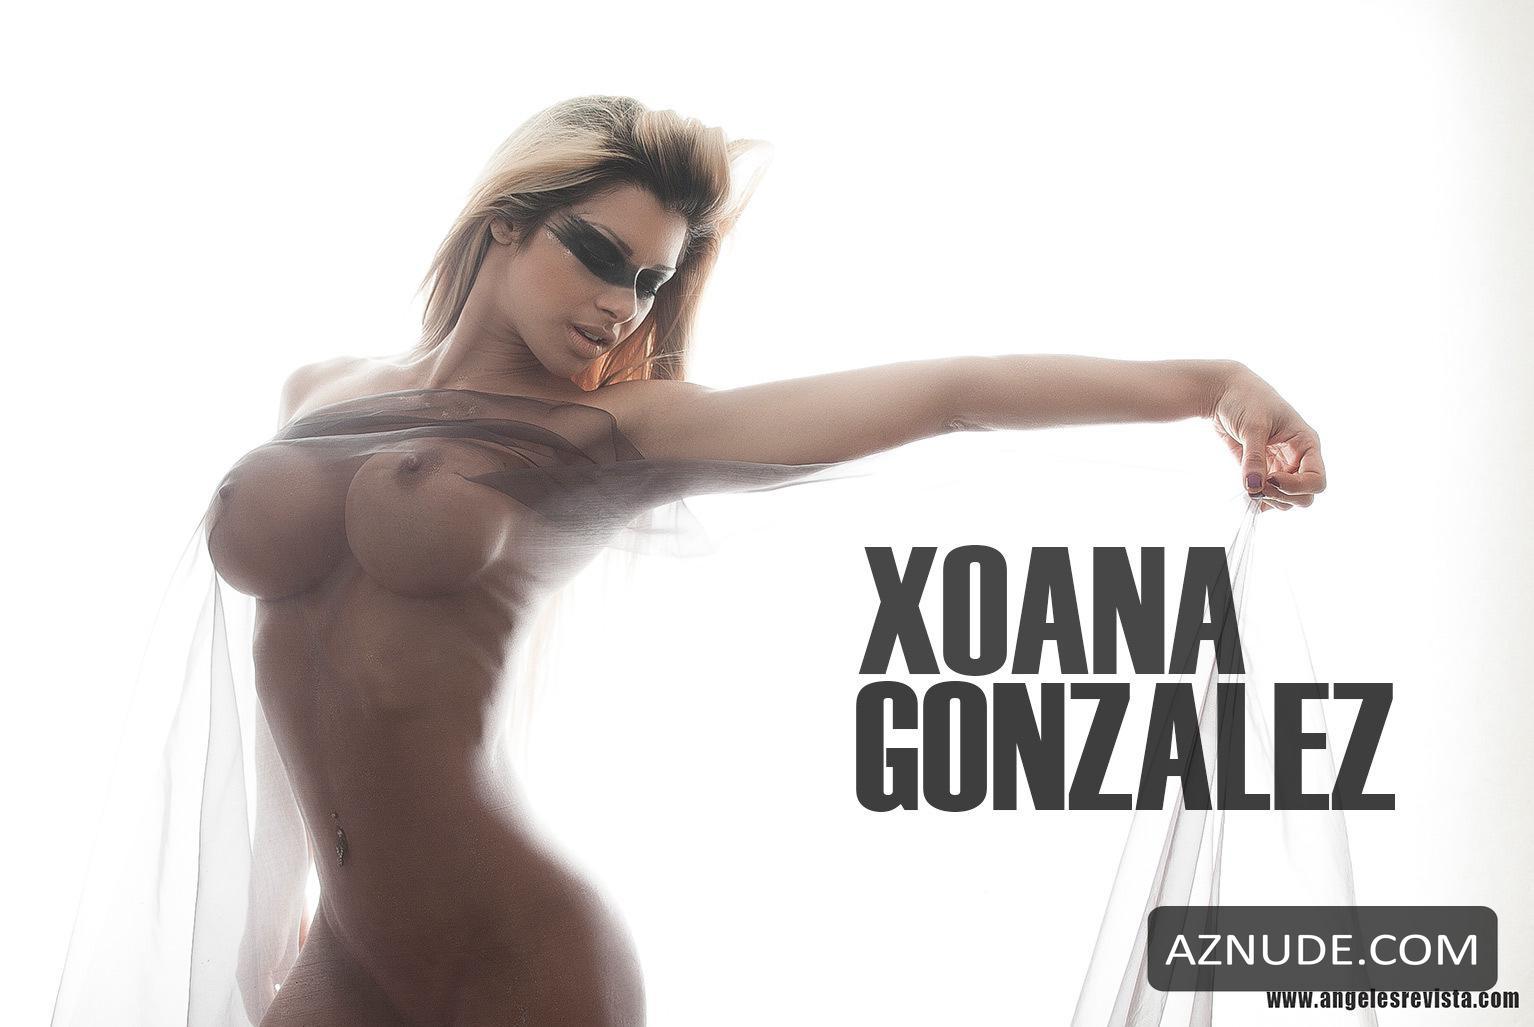 Xoana Gonzalez Nude Photoshoot For Revista Angeles Aznude